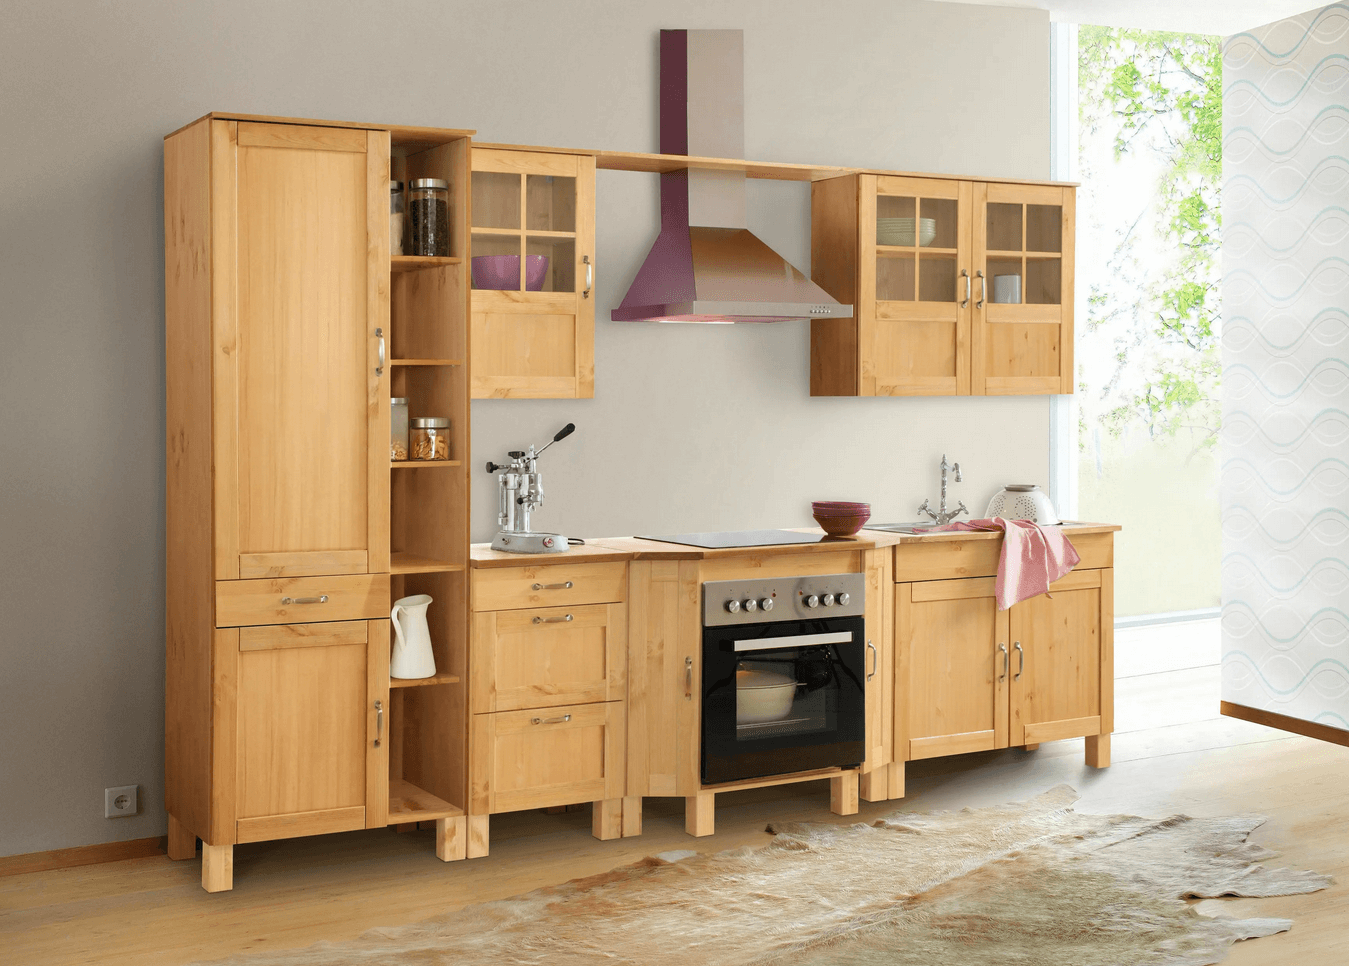 Erfahrung: Gute kaufen Massivholz-Küchenmöbel online Meine